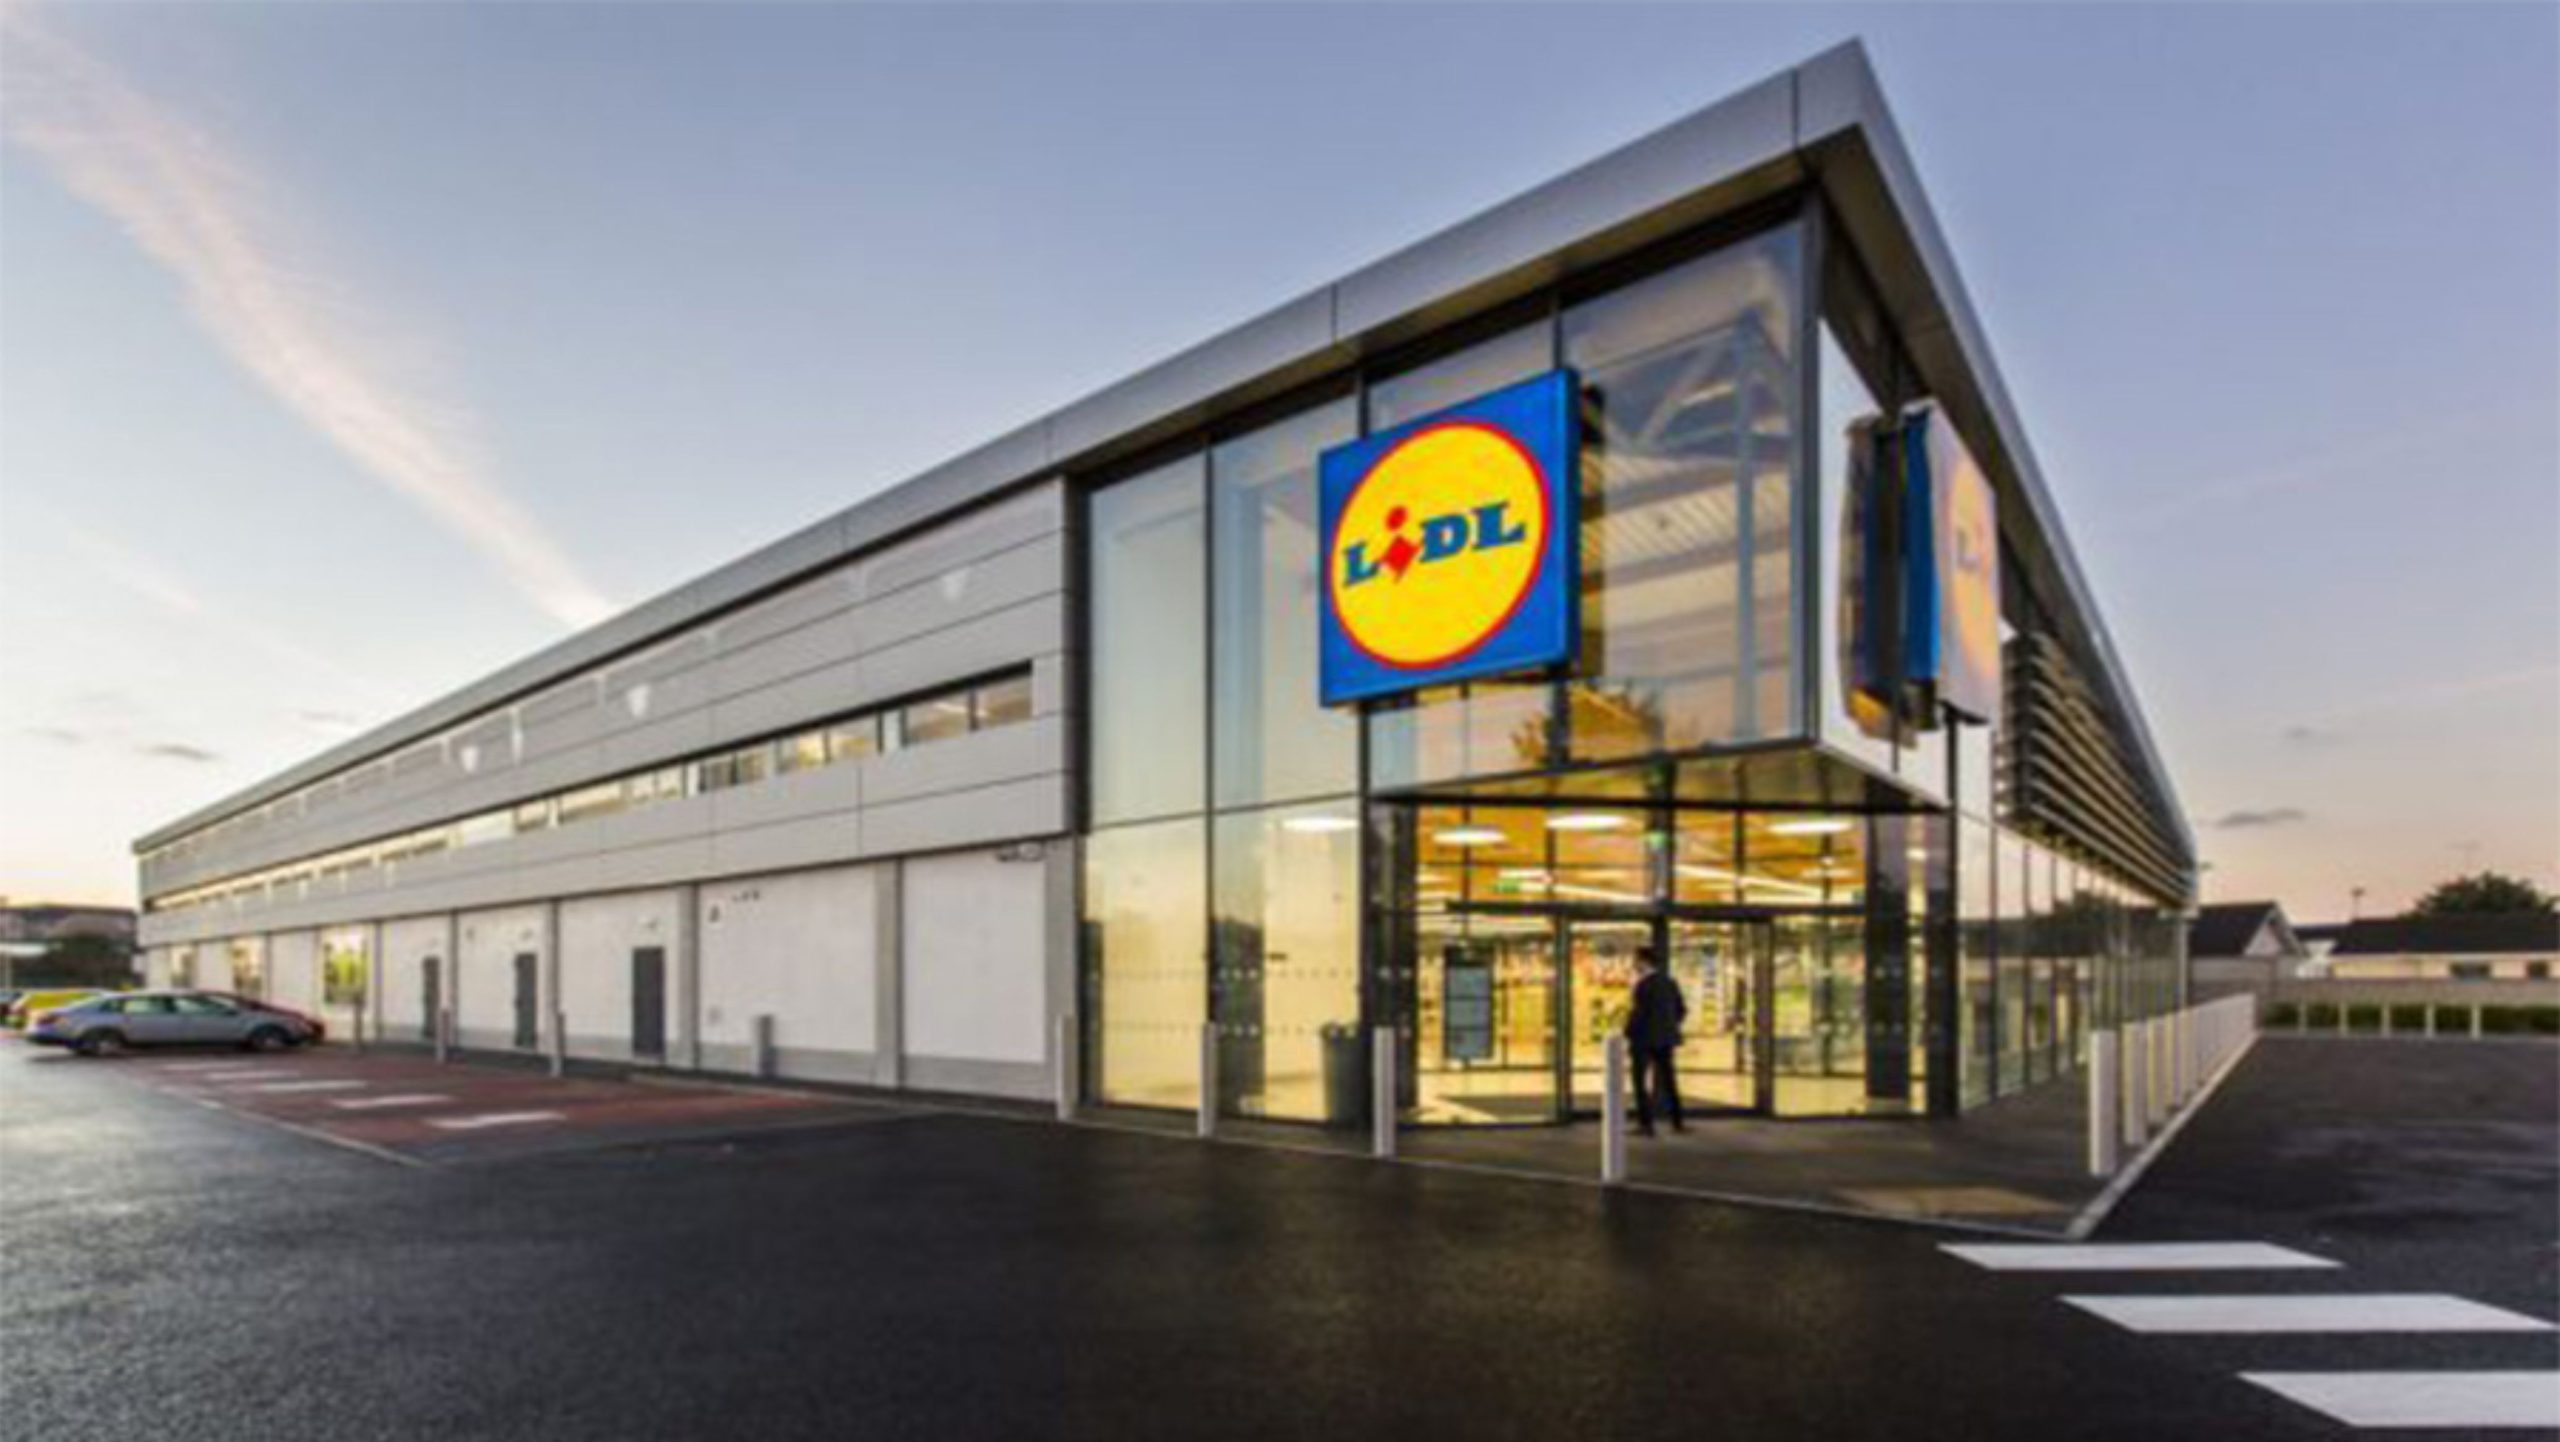 Le supermarché Lidl France recherche du personnel, des nettoyeurs, des préposés et plus encore